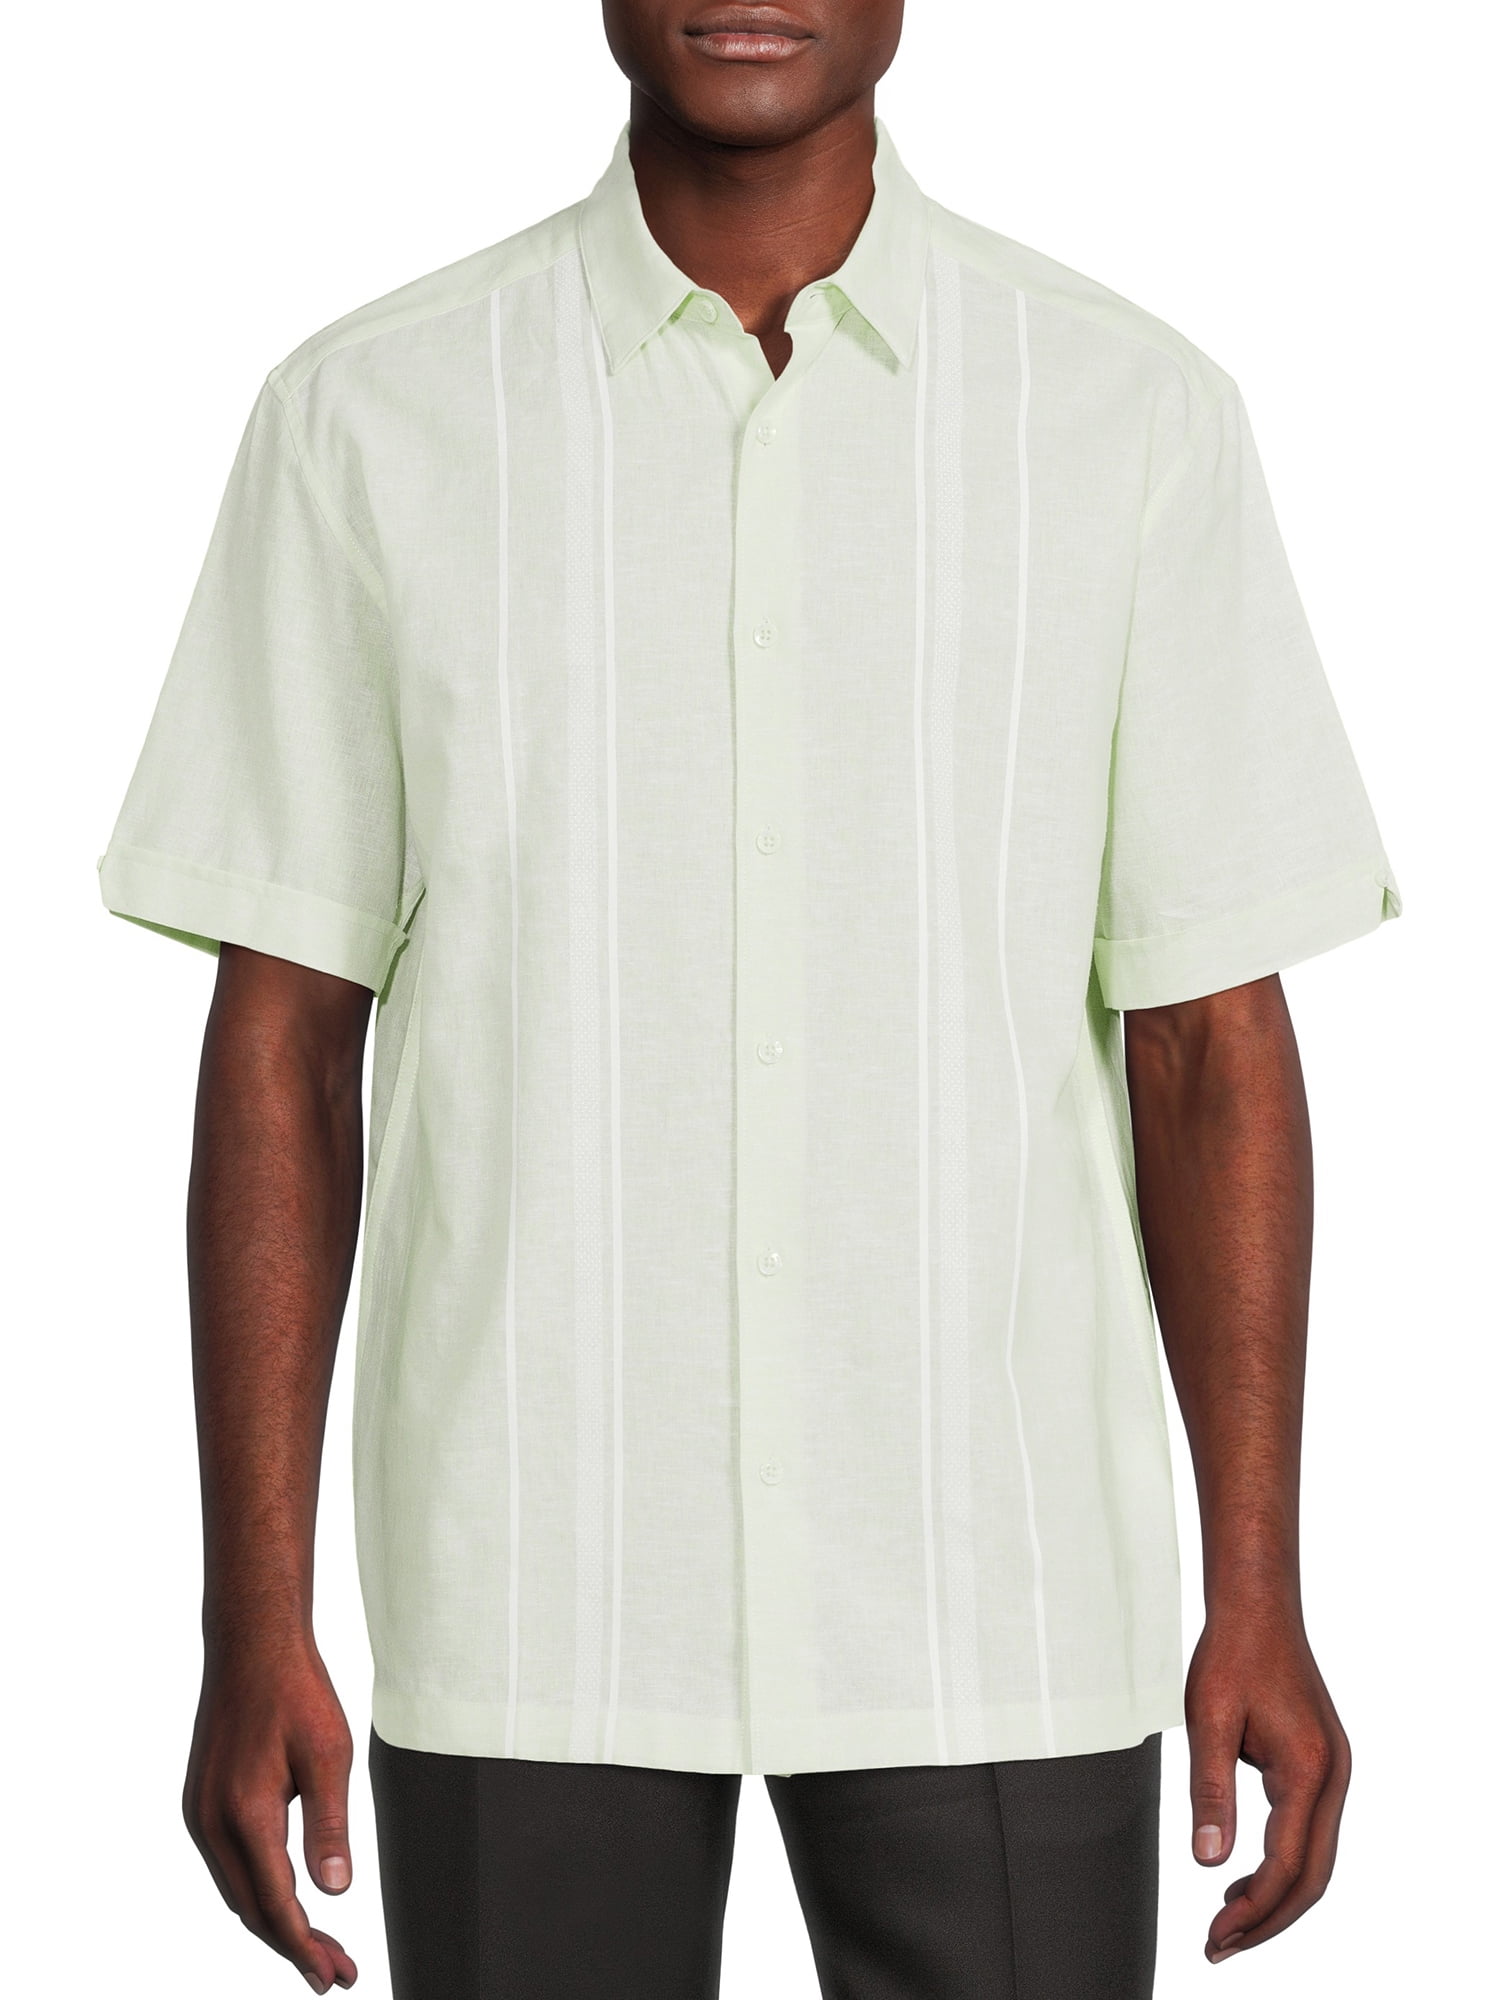 Cafe Luna Men's Short Sleeve Linen Cotton Panel Woven Shirt